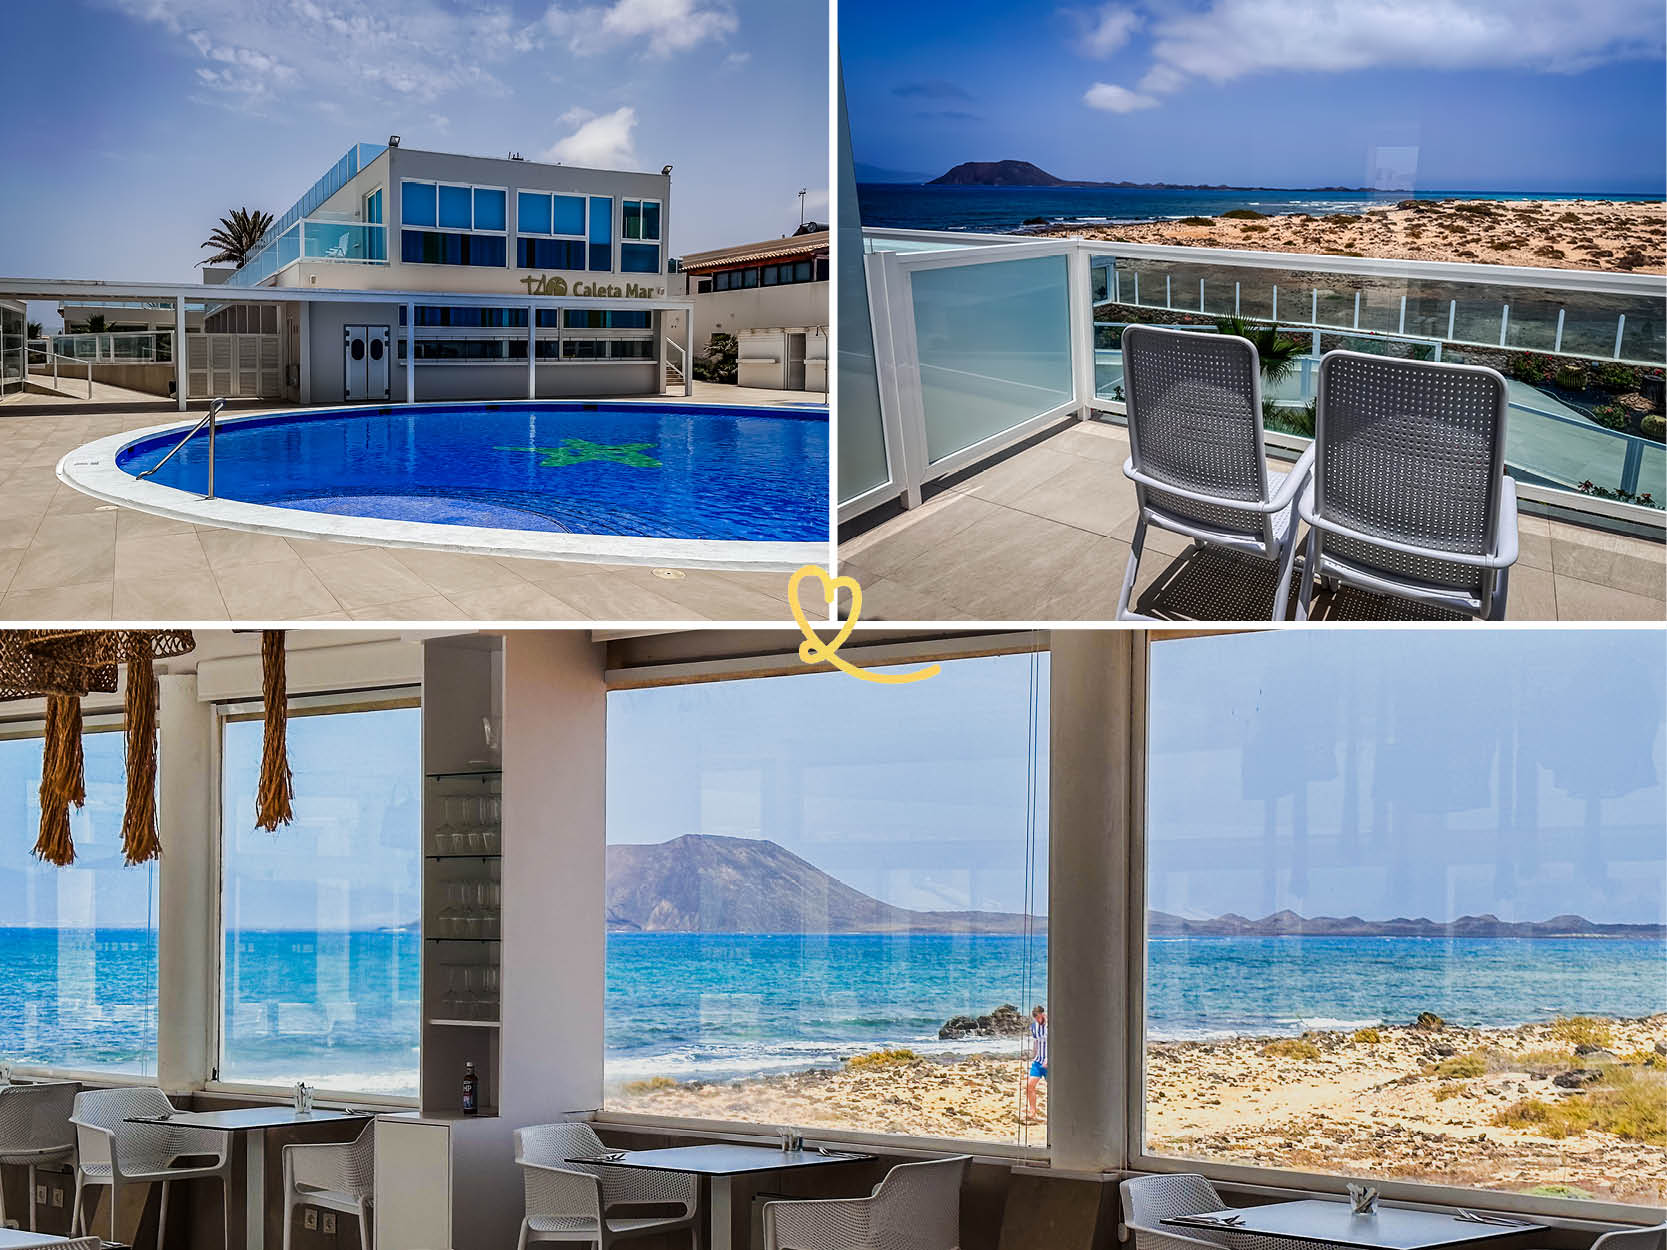 Lees onze recensie van het TAO Caleta Mar Boutique Hotel, in Corralejo op het eiland Fuerteventura!